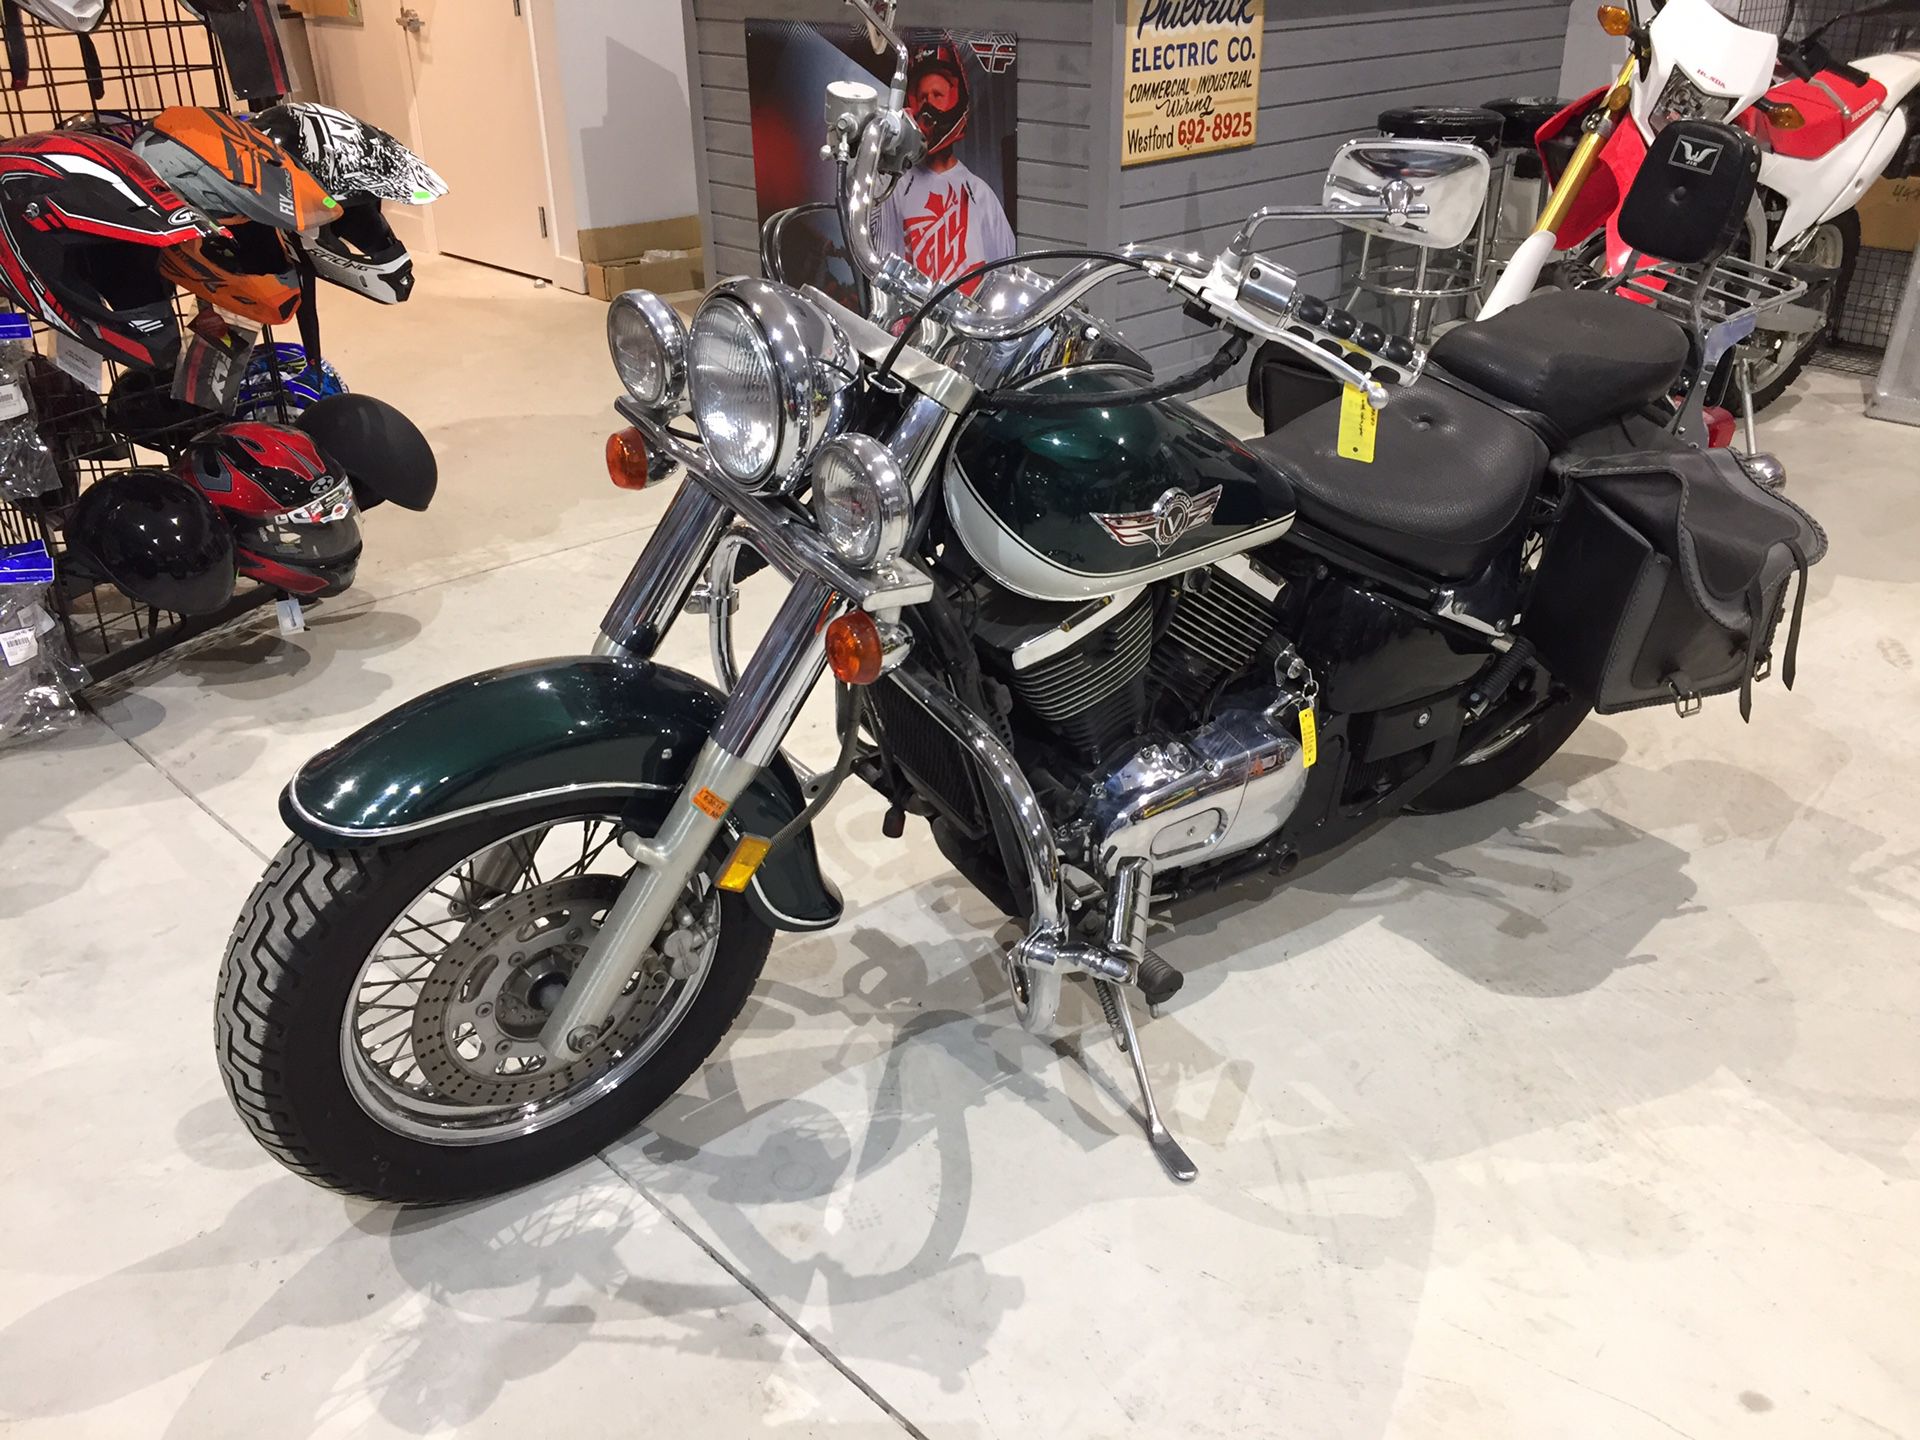 1998 Kawasaki Vulcan 800cc motorcycle 34,246 miles cobra pipes will trade